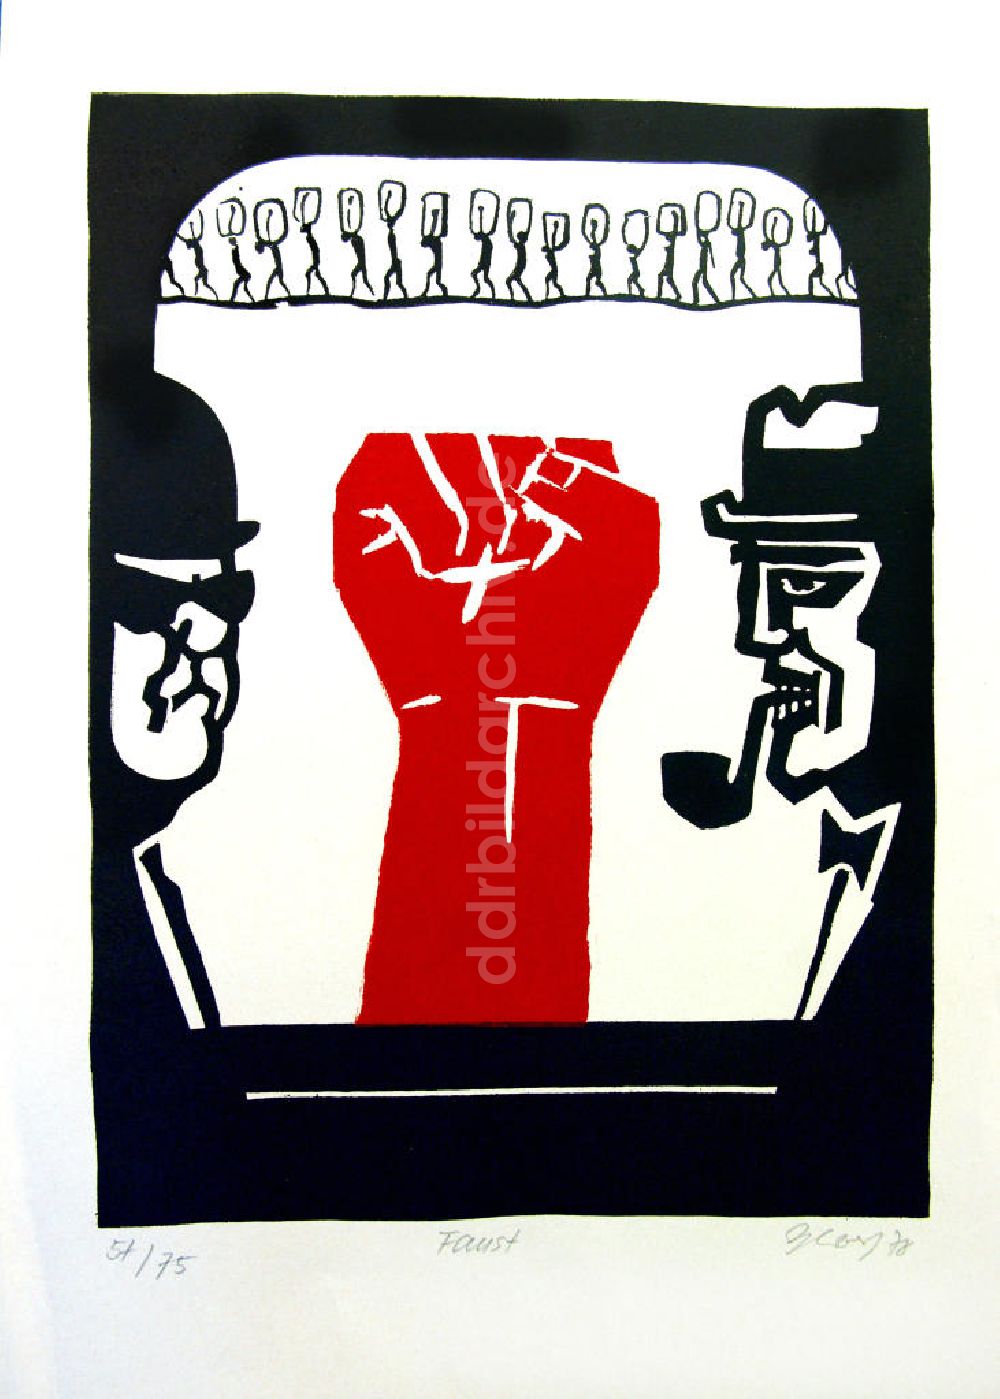 DDR-Bildarchiv: Berlin - Grafik von Herbert Sandberg Motiv 10 aus dem Zyklus Bilder zum Kommunistischen Manifest aus dem Jahr 1978